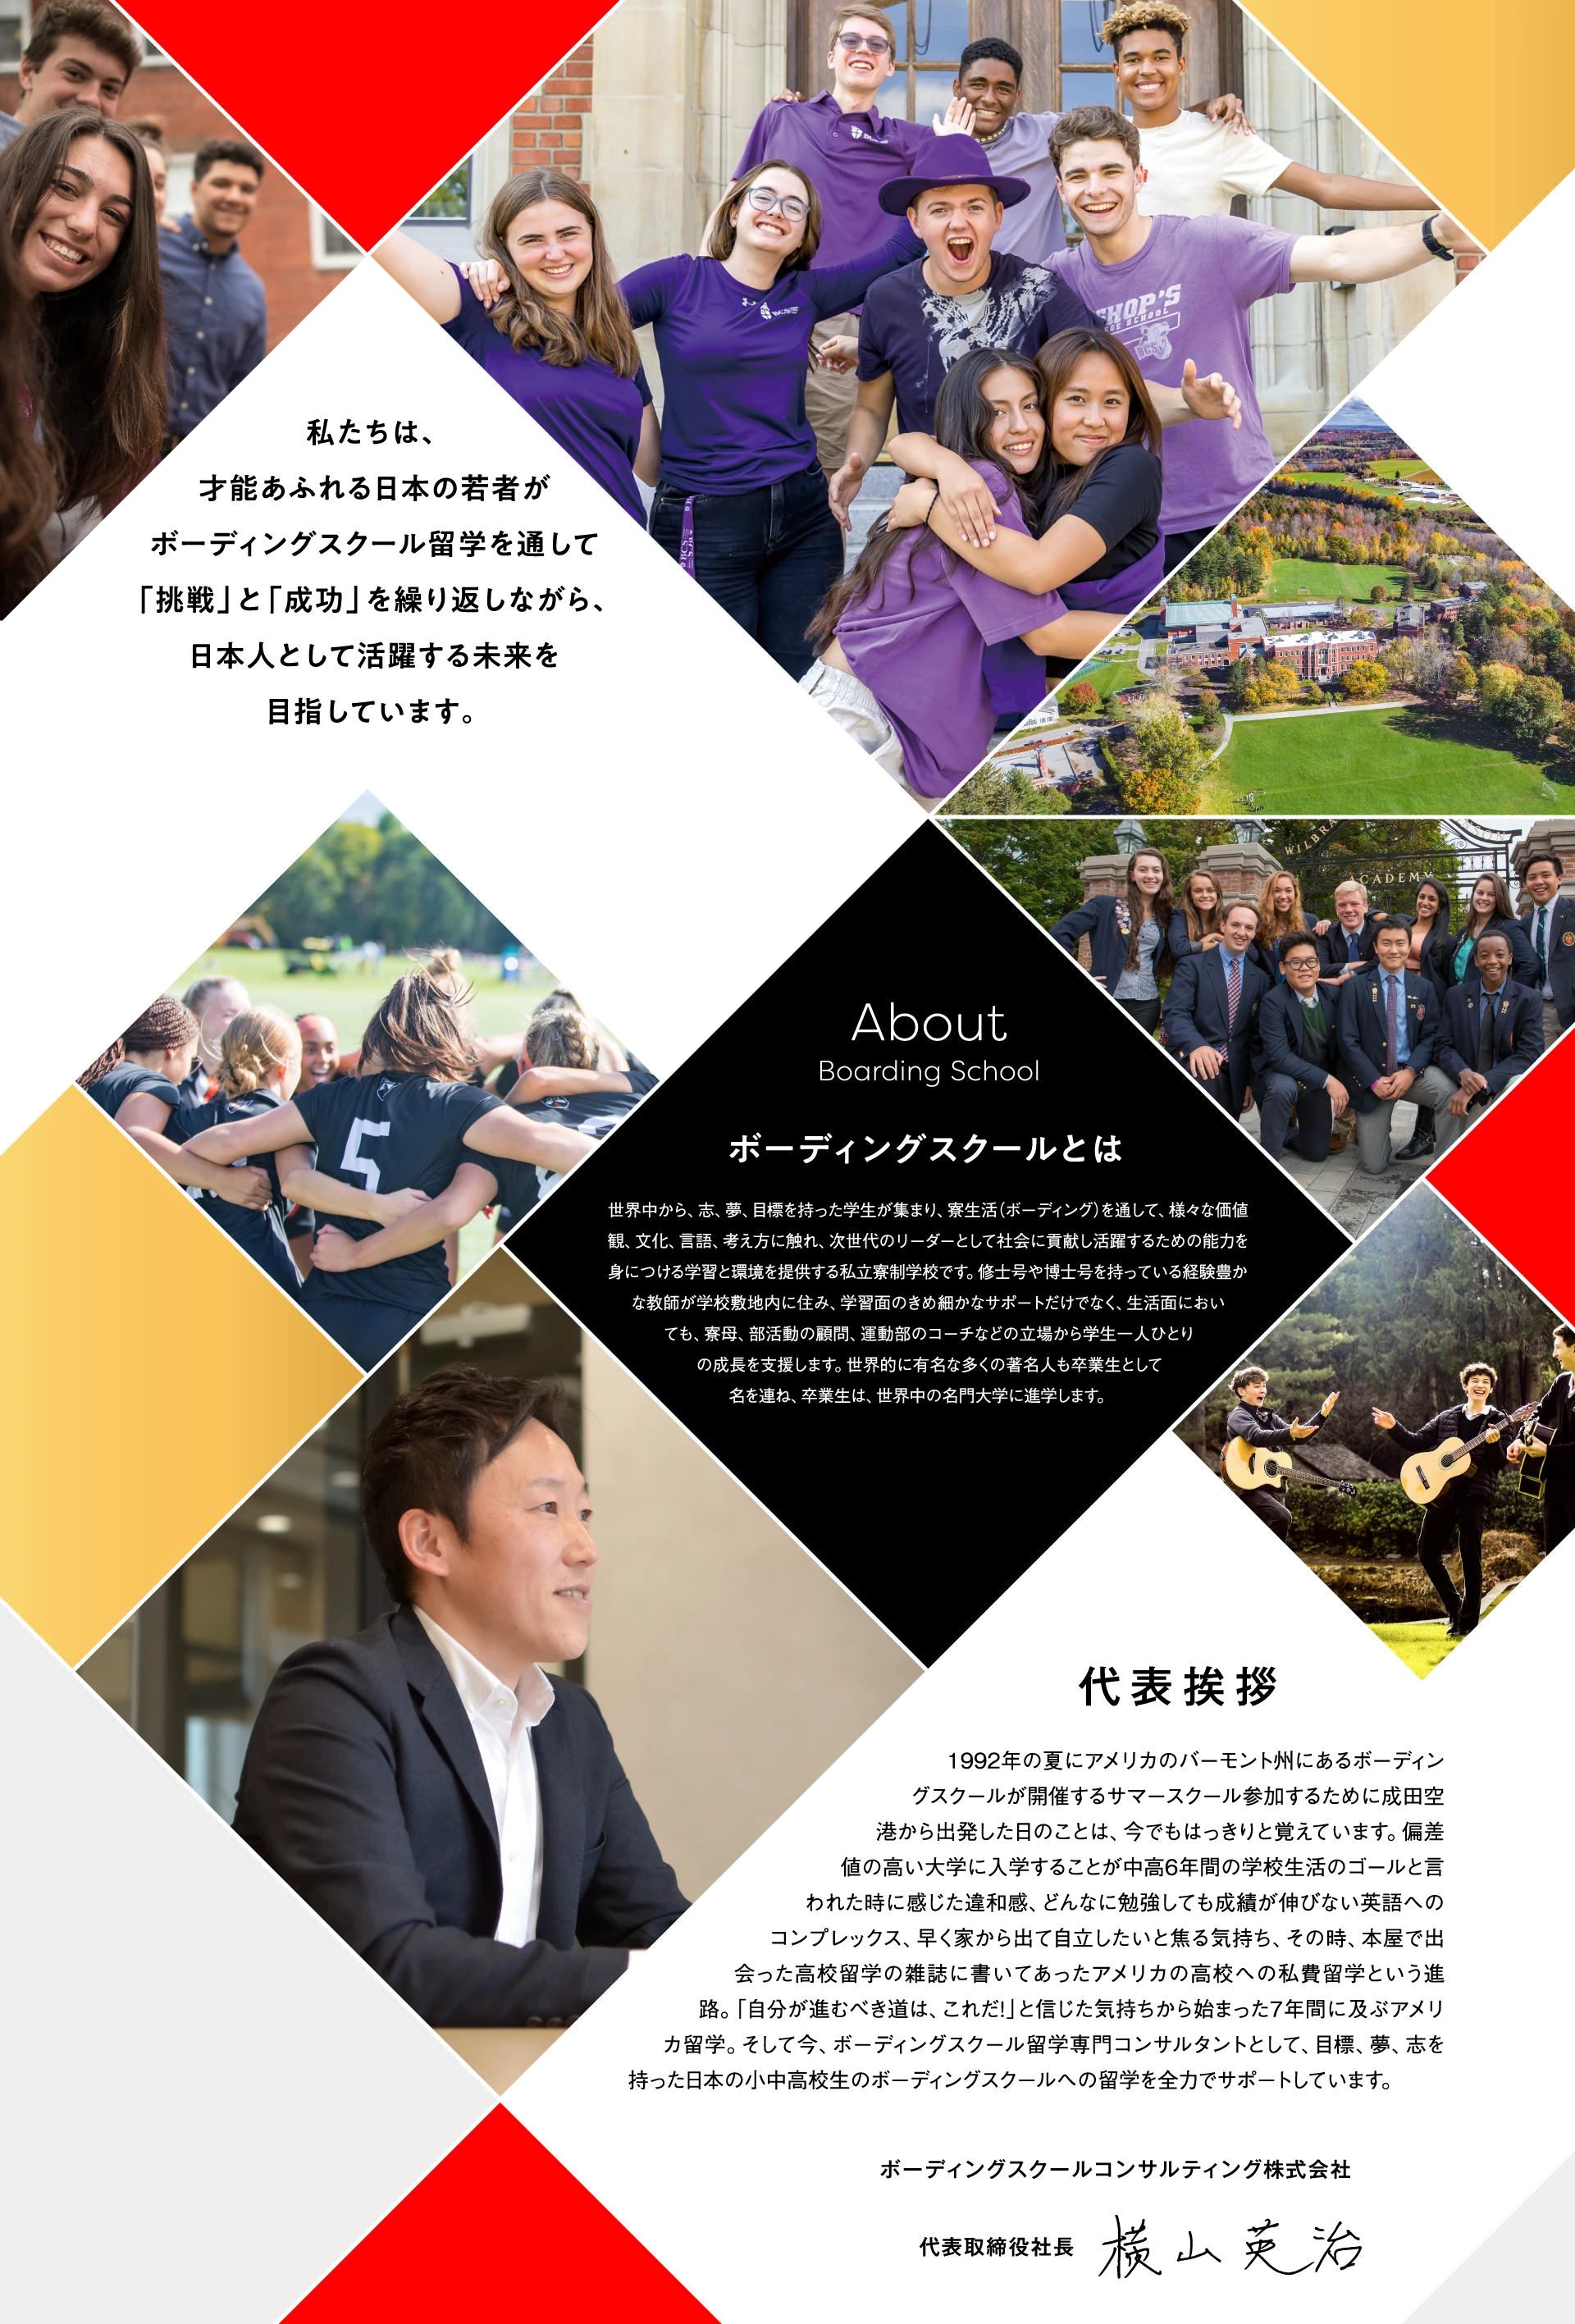 私たちは、才能あふれる日本の若者がボーディングスクール留学を通して「挑戦」と「成功」を繰り返しながら、日本人として活躍する未来を目指しています。